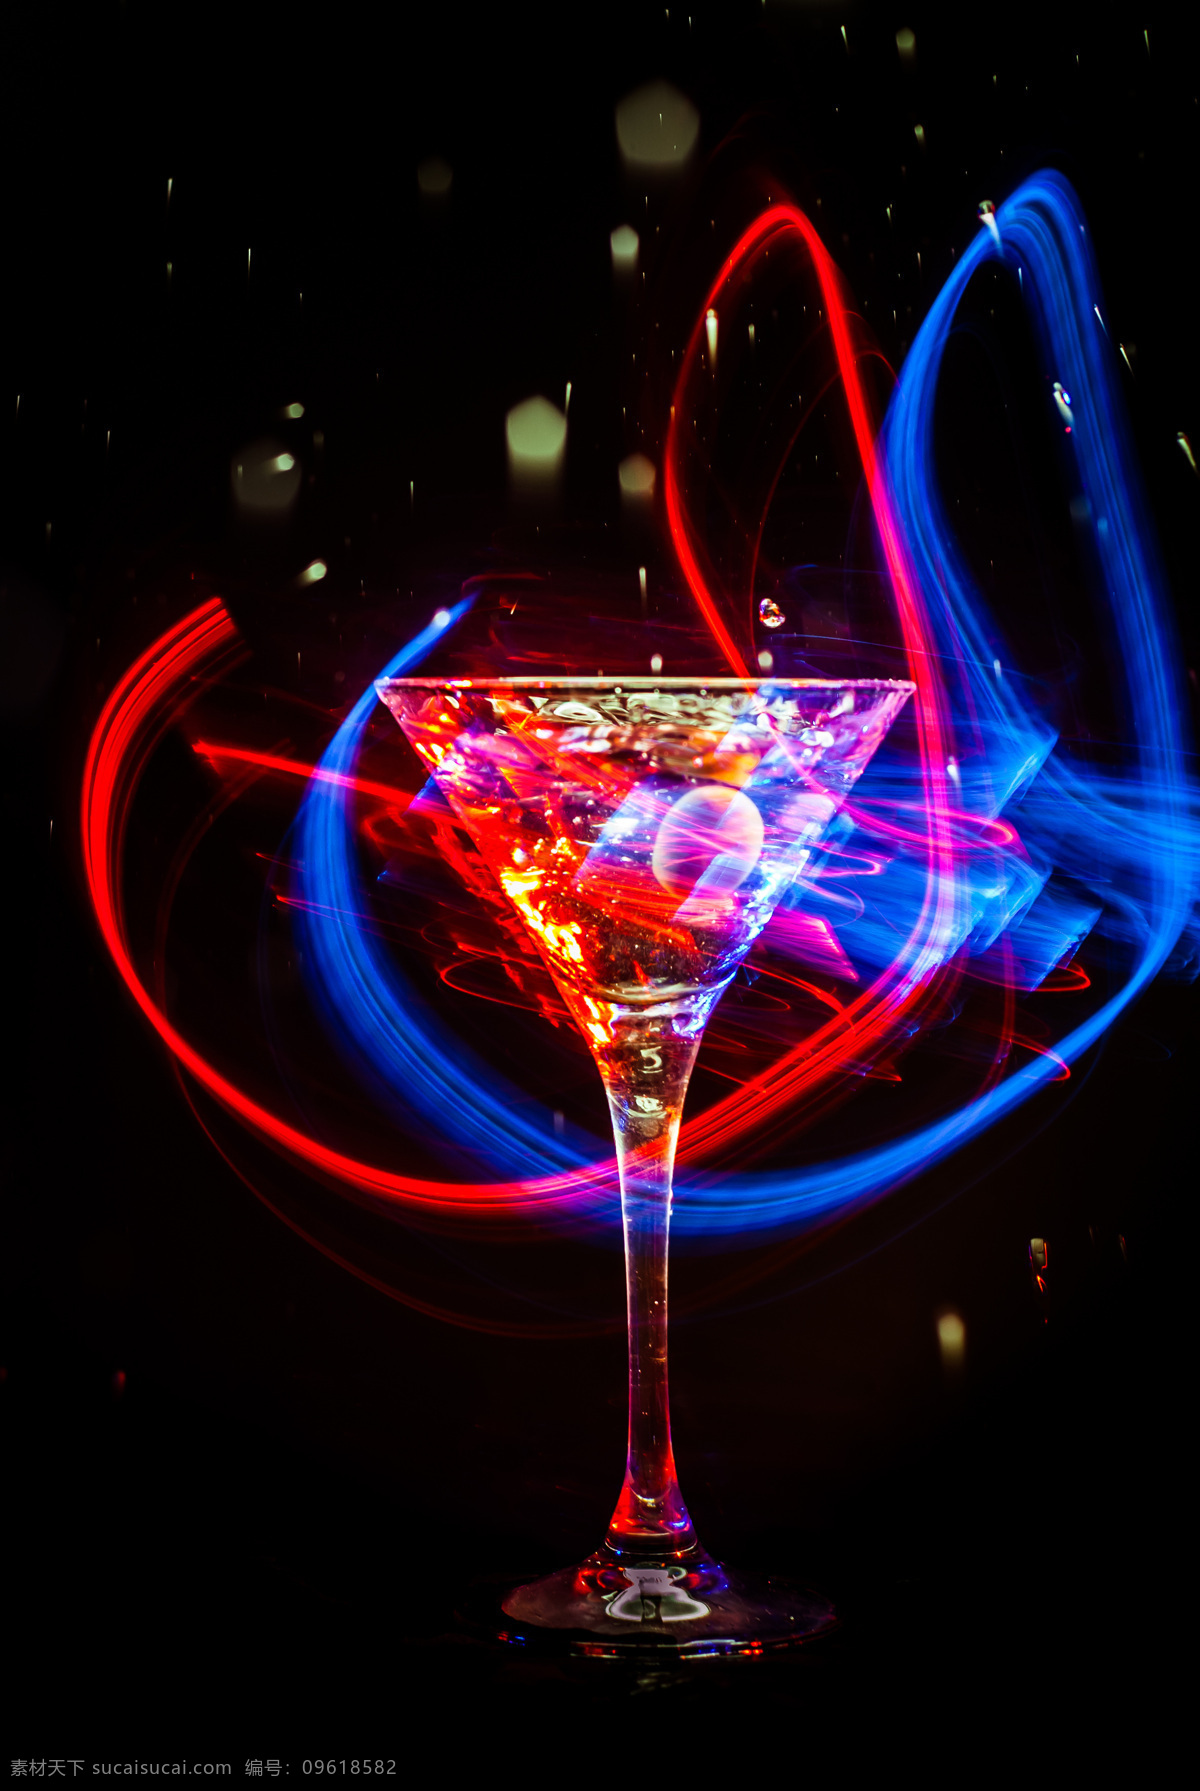 蓝 红光 围绕 酒杯 红 光 鸡尾酒 水果鸡尾酒 草莓 冰块 冰爽 果汁饮料 酒水饮 酒类图片 餐饮美食